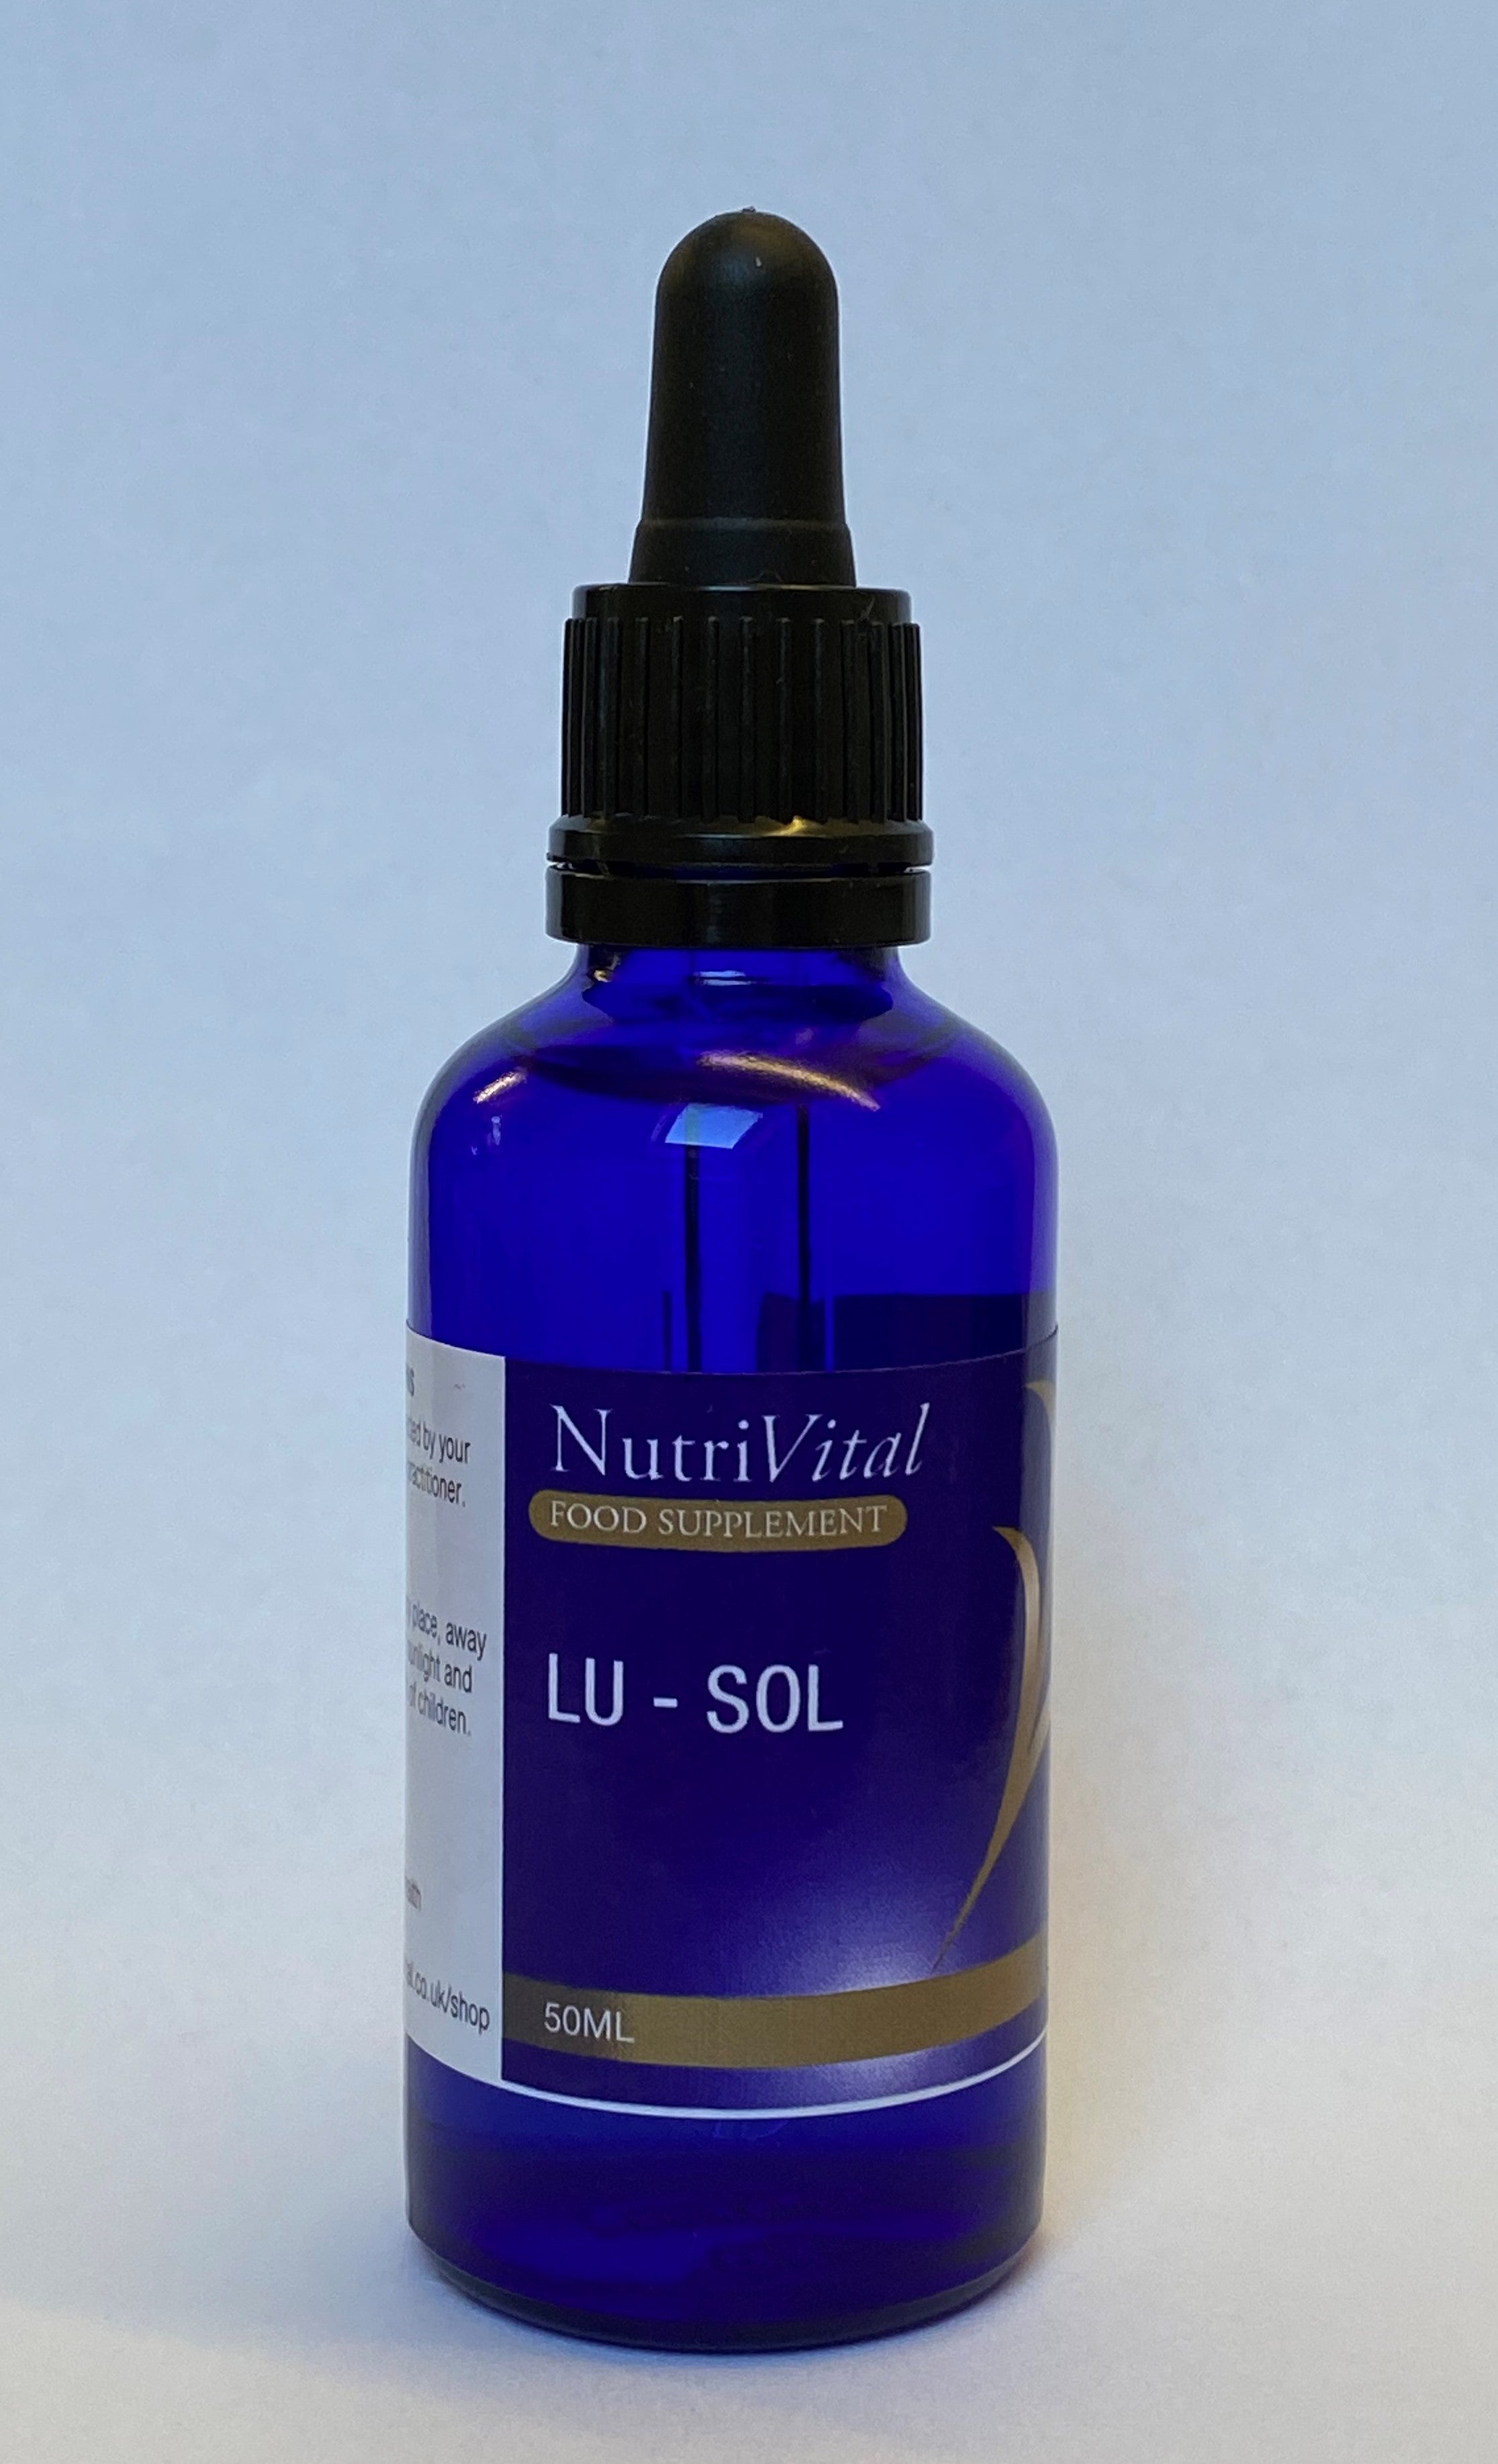 Nutrivital LU-SOL 50ml